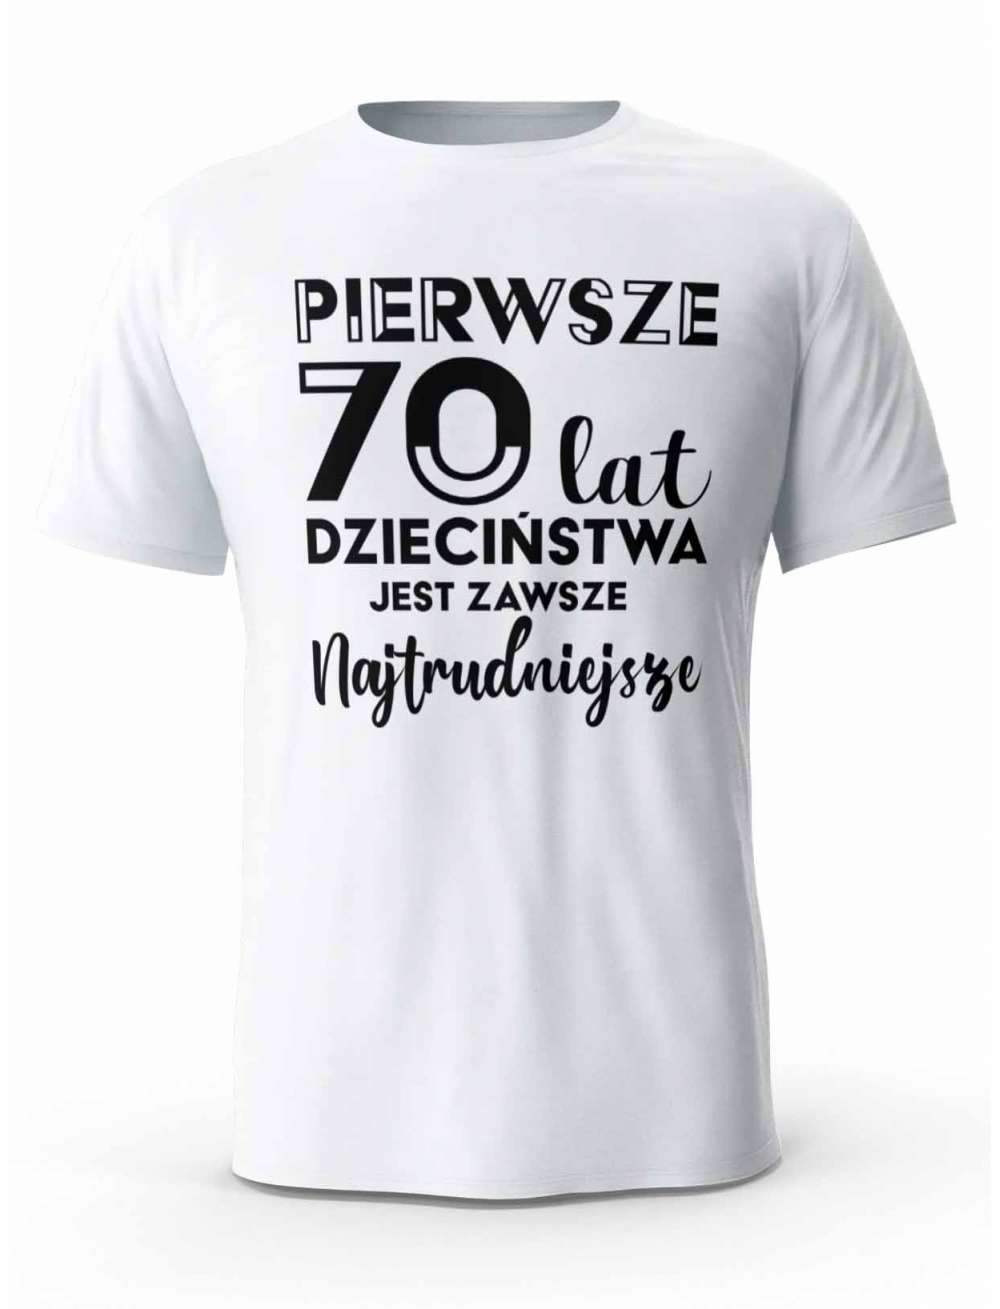 Koszulka Pierwsze 70 lat Dzieciństwa, T-shirt Dla Mężczyzny